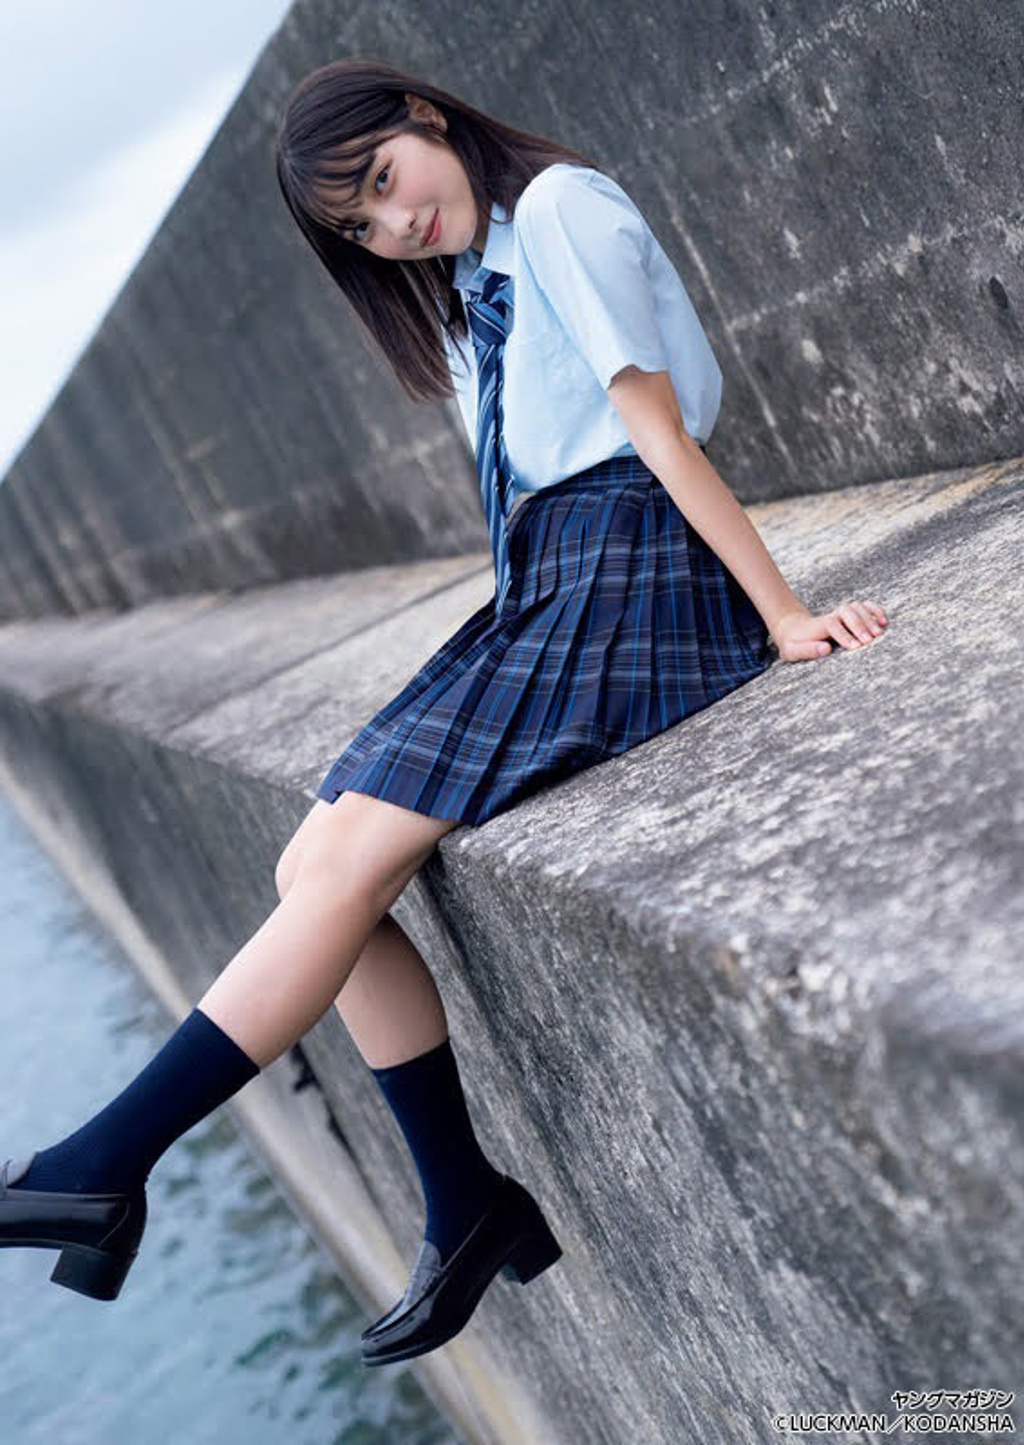 日本最可愛高中生「福田瑠美香」寫真曝光！甜美展現 17 歲的青春肉體+活力  (圖片／JKF提供)